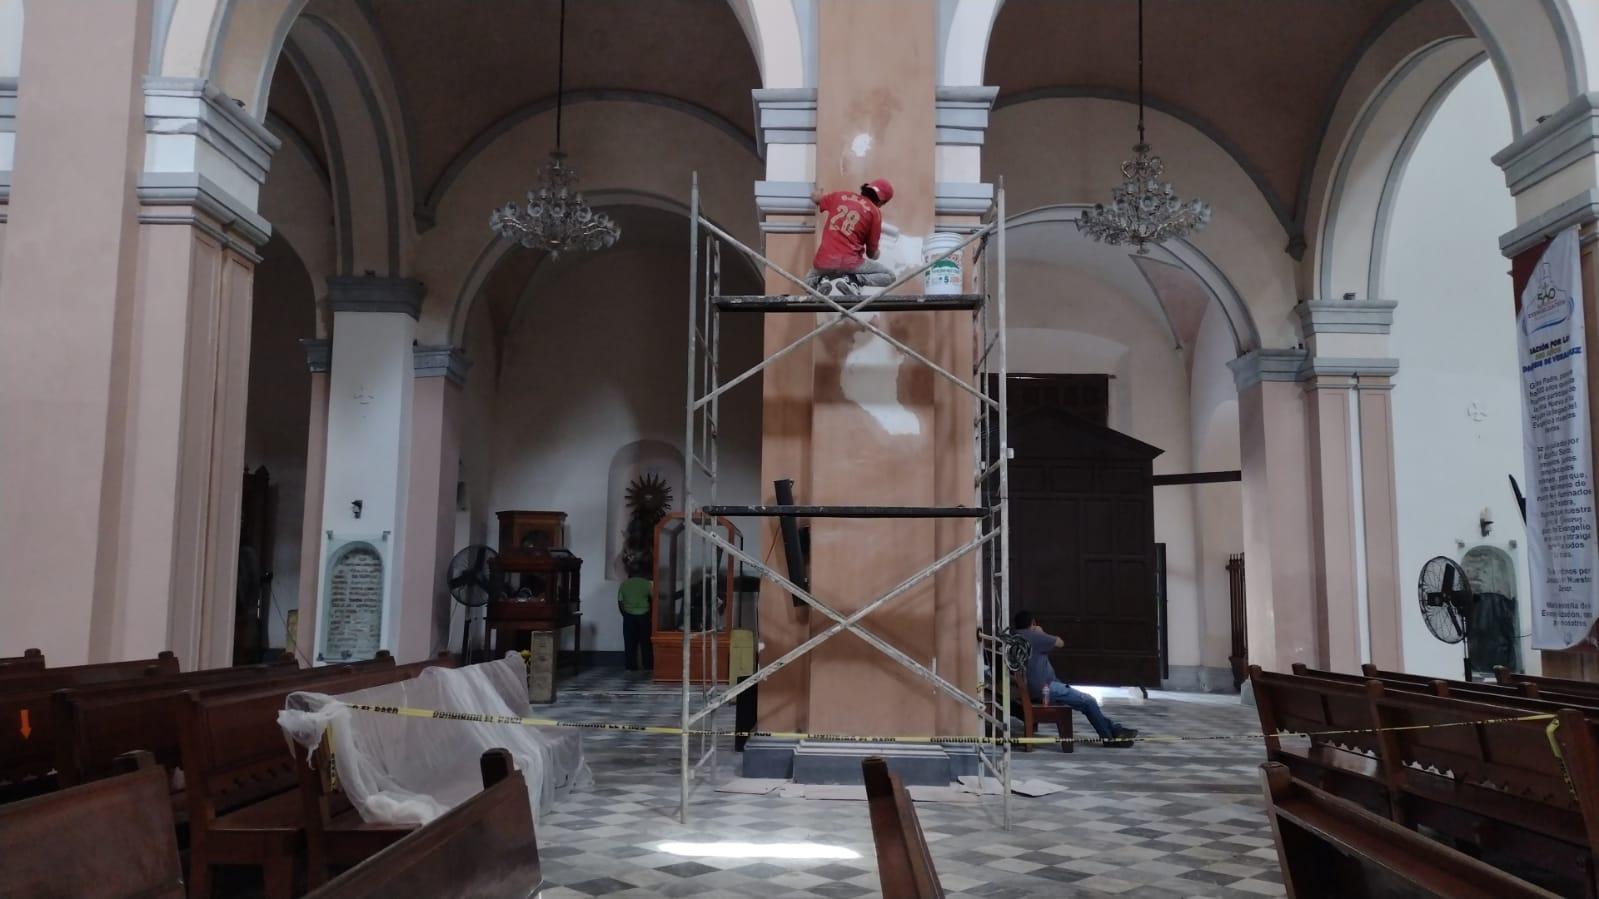 Por visita del Nuncio Apostólico, dan mantenimiento a la Catedral de Veracruz